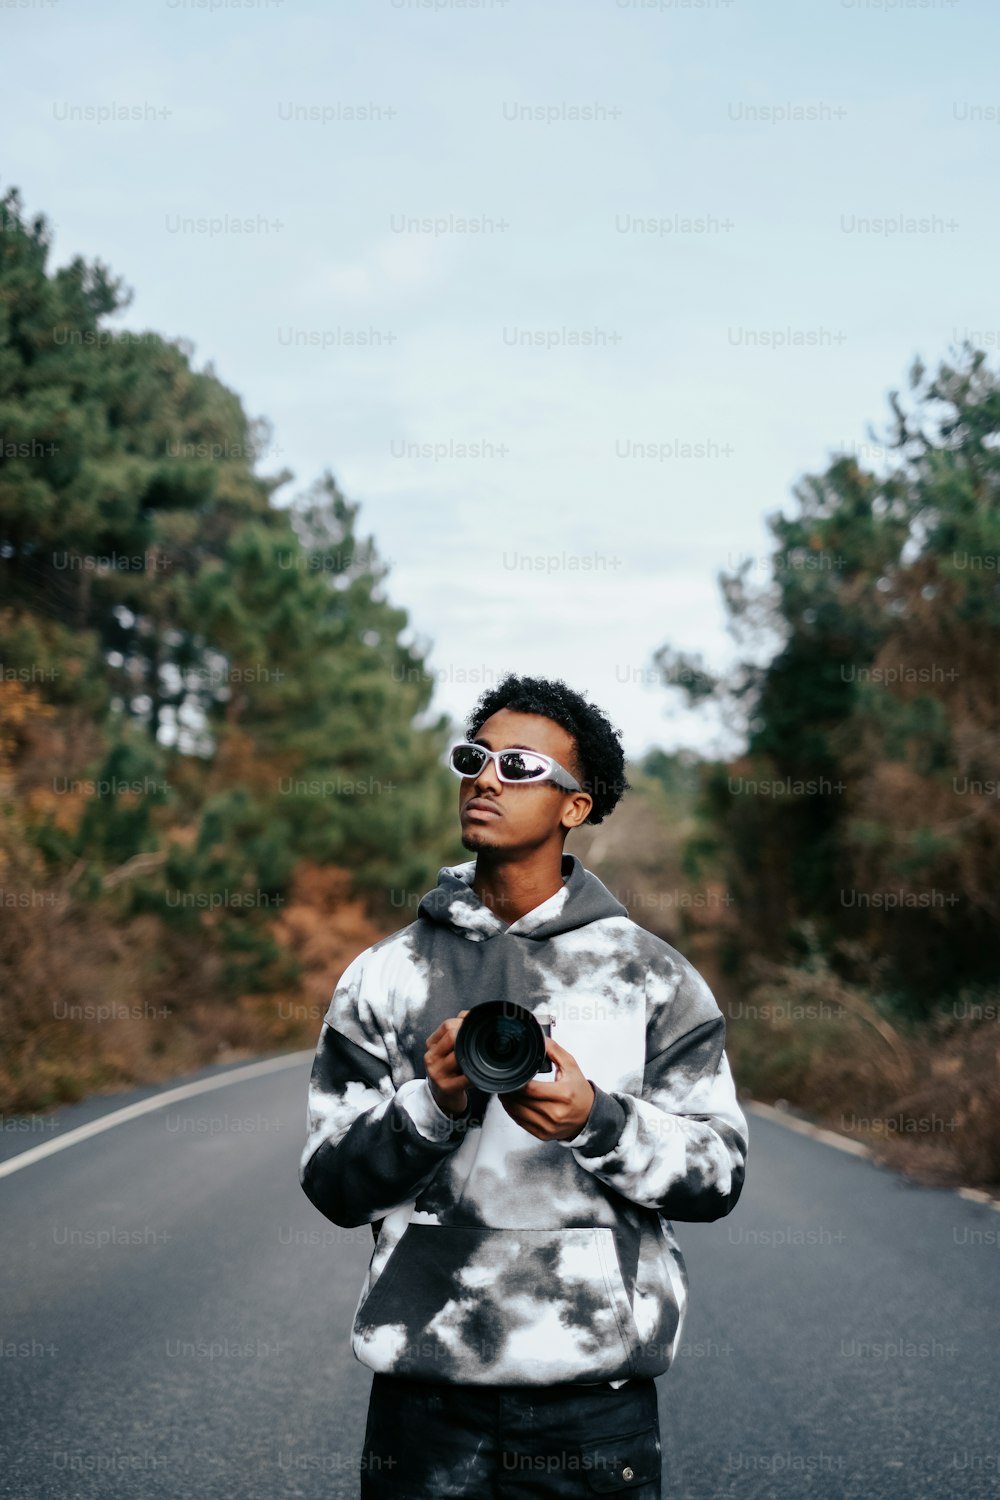 Un hombre parado al costado de una carretera sosteniendo una cámara